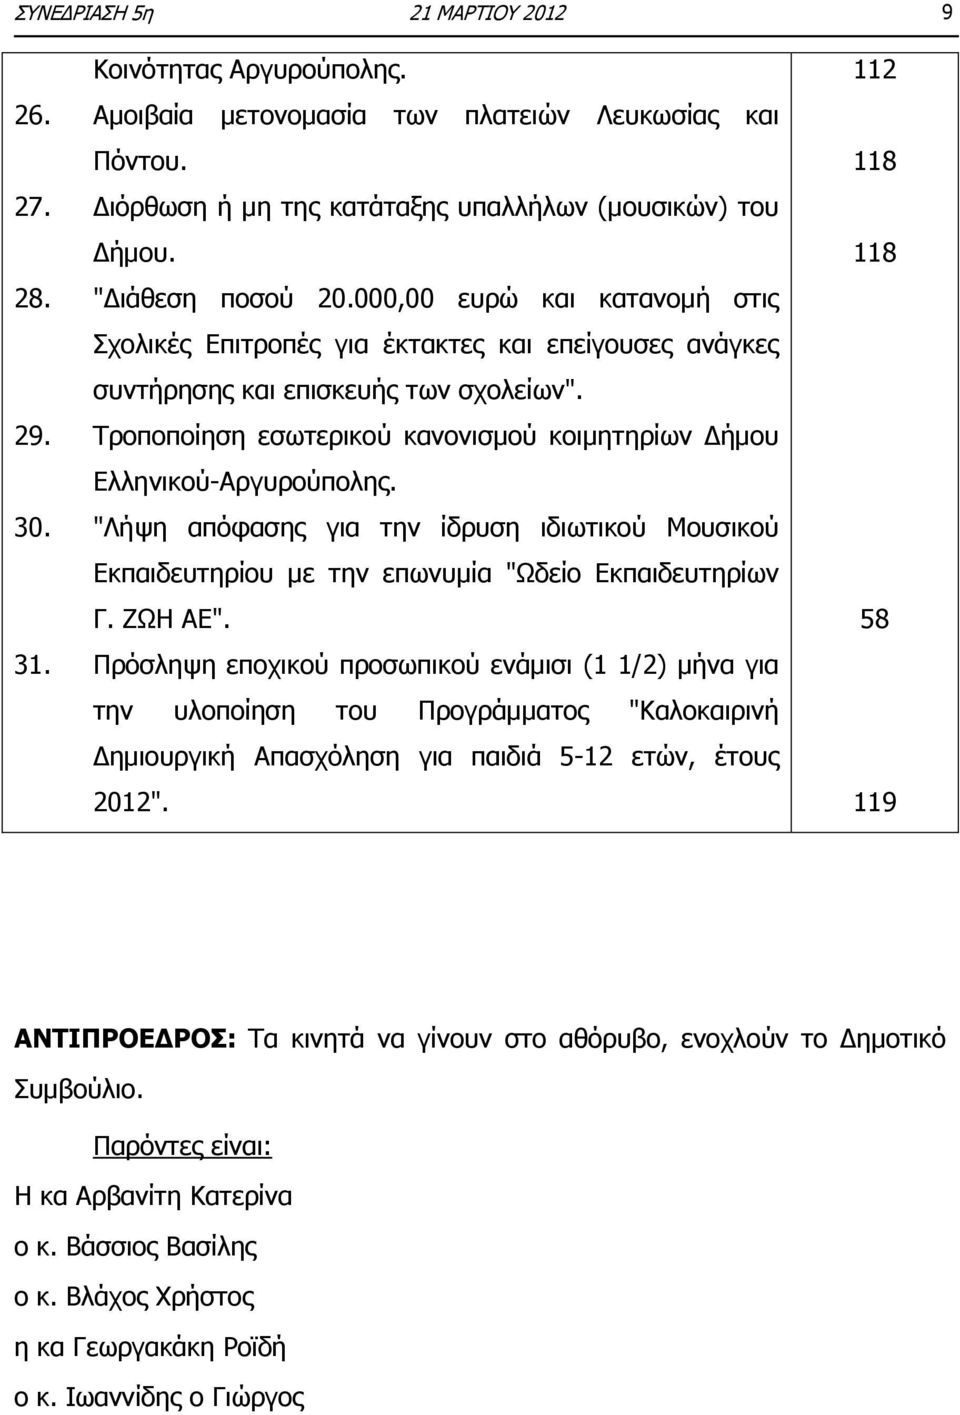 Τροποποίηση εσωτερικού κανονισμού κοιμητηρίων Δήμου Ελληνικού-Αργυρούπολης. 30. "Λήψη απόφασης για την ίδρυση ιδιωτικού Μουσικού Εκπαιδευτηρίου με την επωνυμία "Ωδείο Εκπαιδευτηρίων Γ. ΖΩΗ ΑΕ". 31.